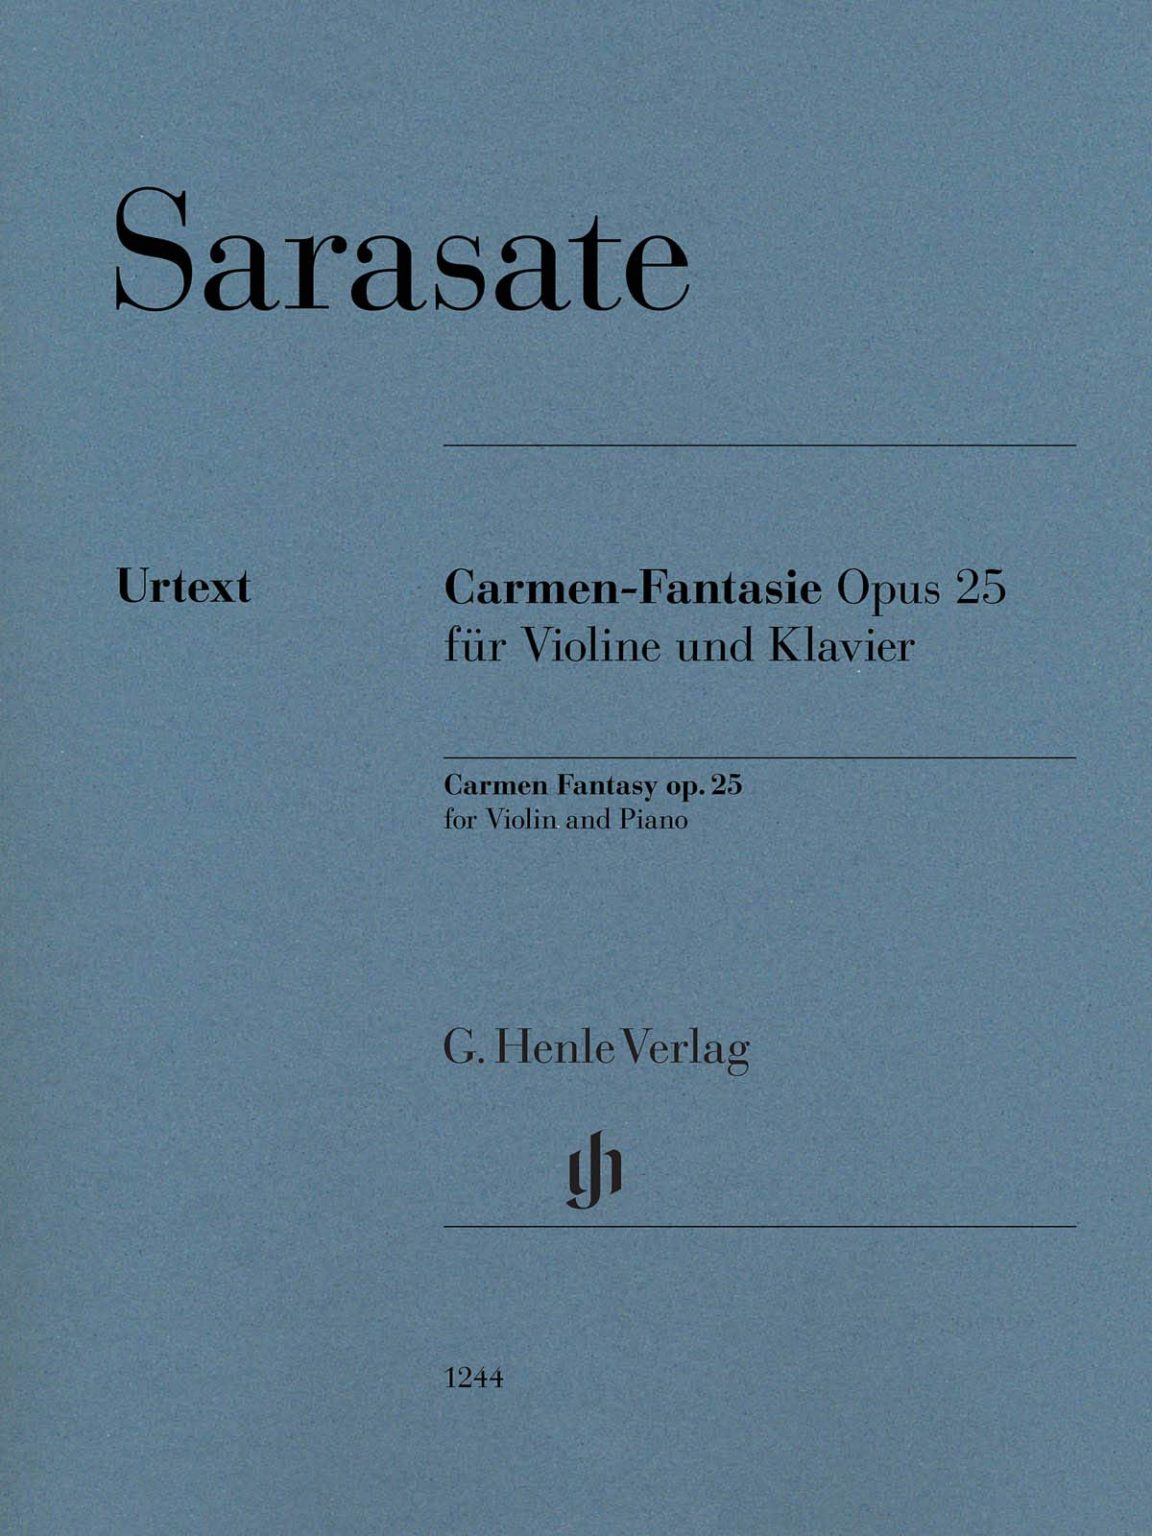 Carmen Fantasie op.25 para clarinete y piano. Pablo de Sarasate